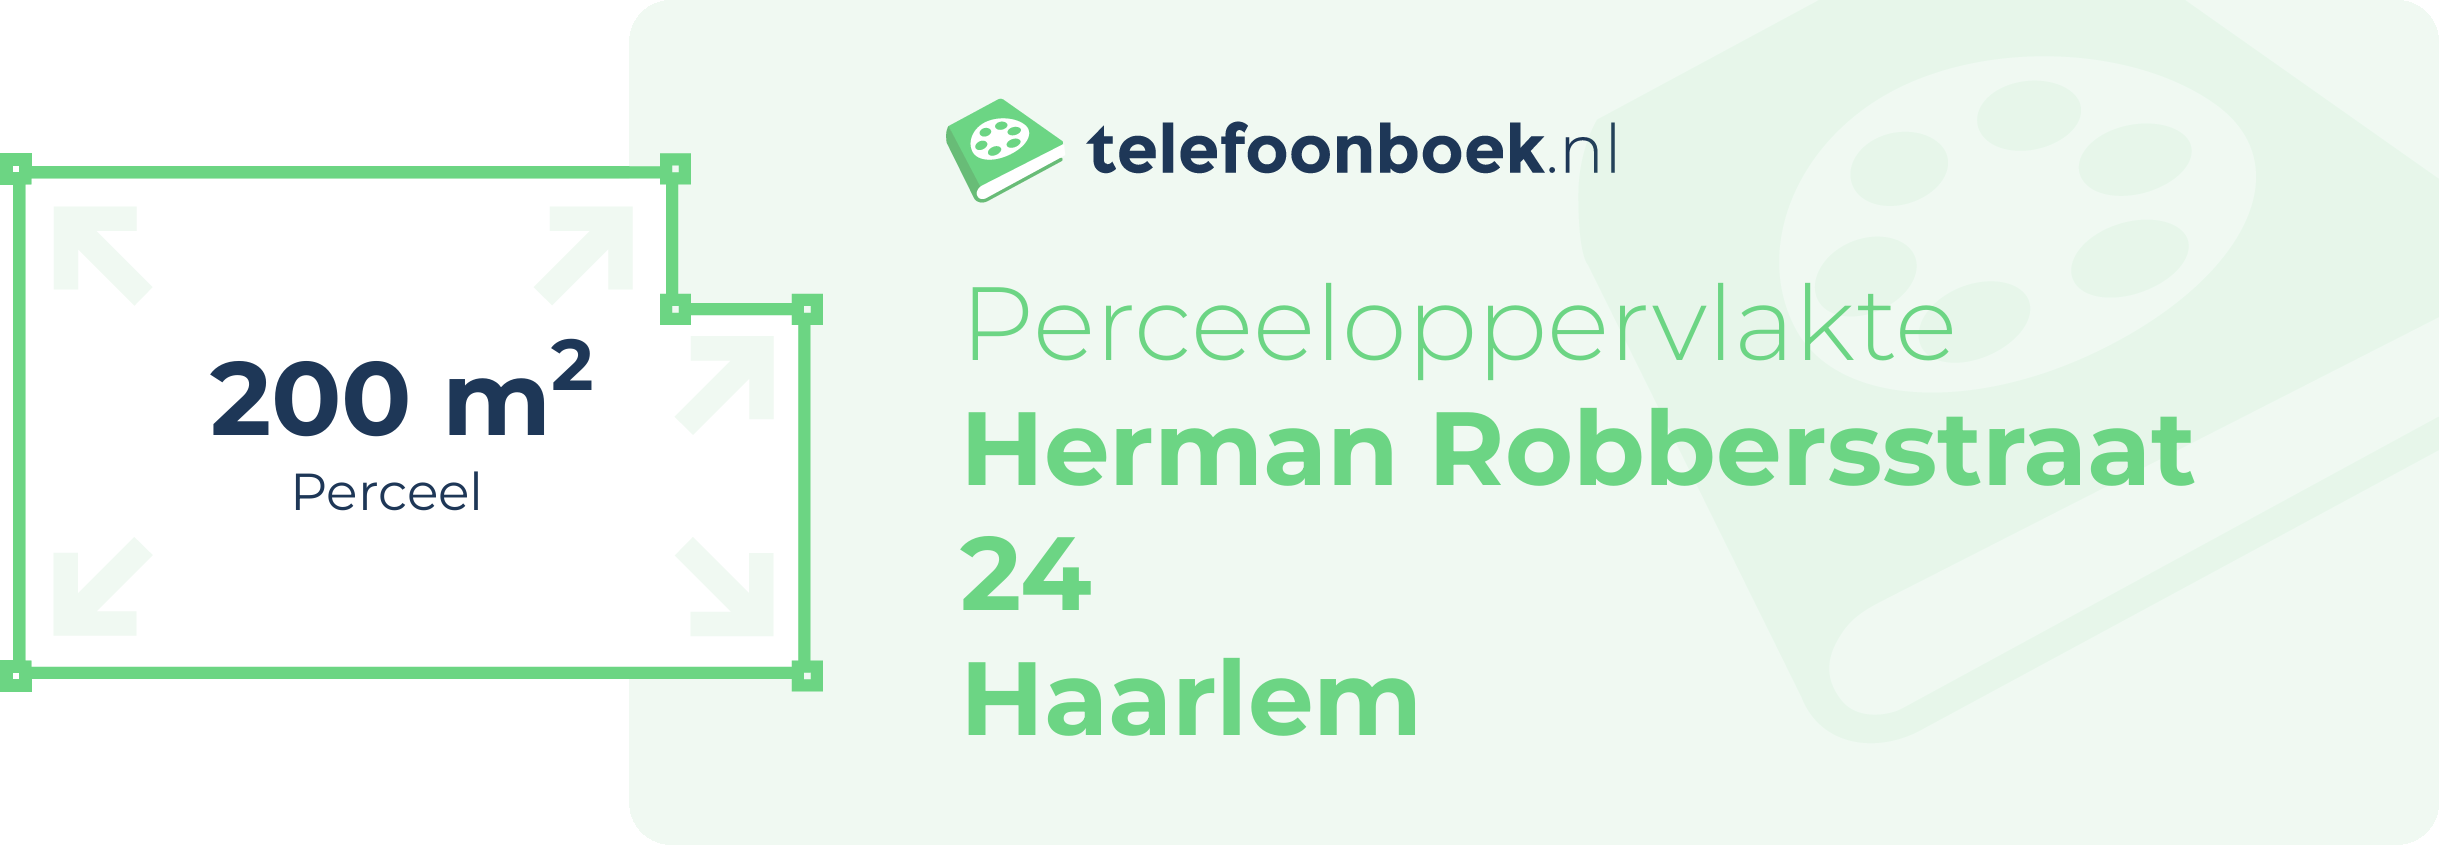 Perceeloppervlakte Herman Robbersstraat 24 Haarlem